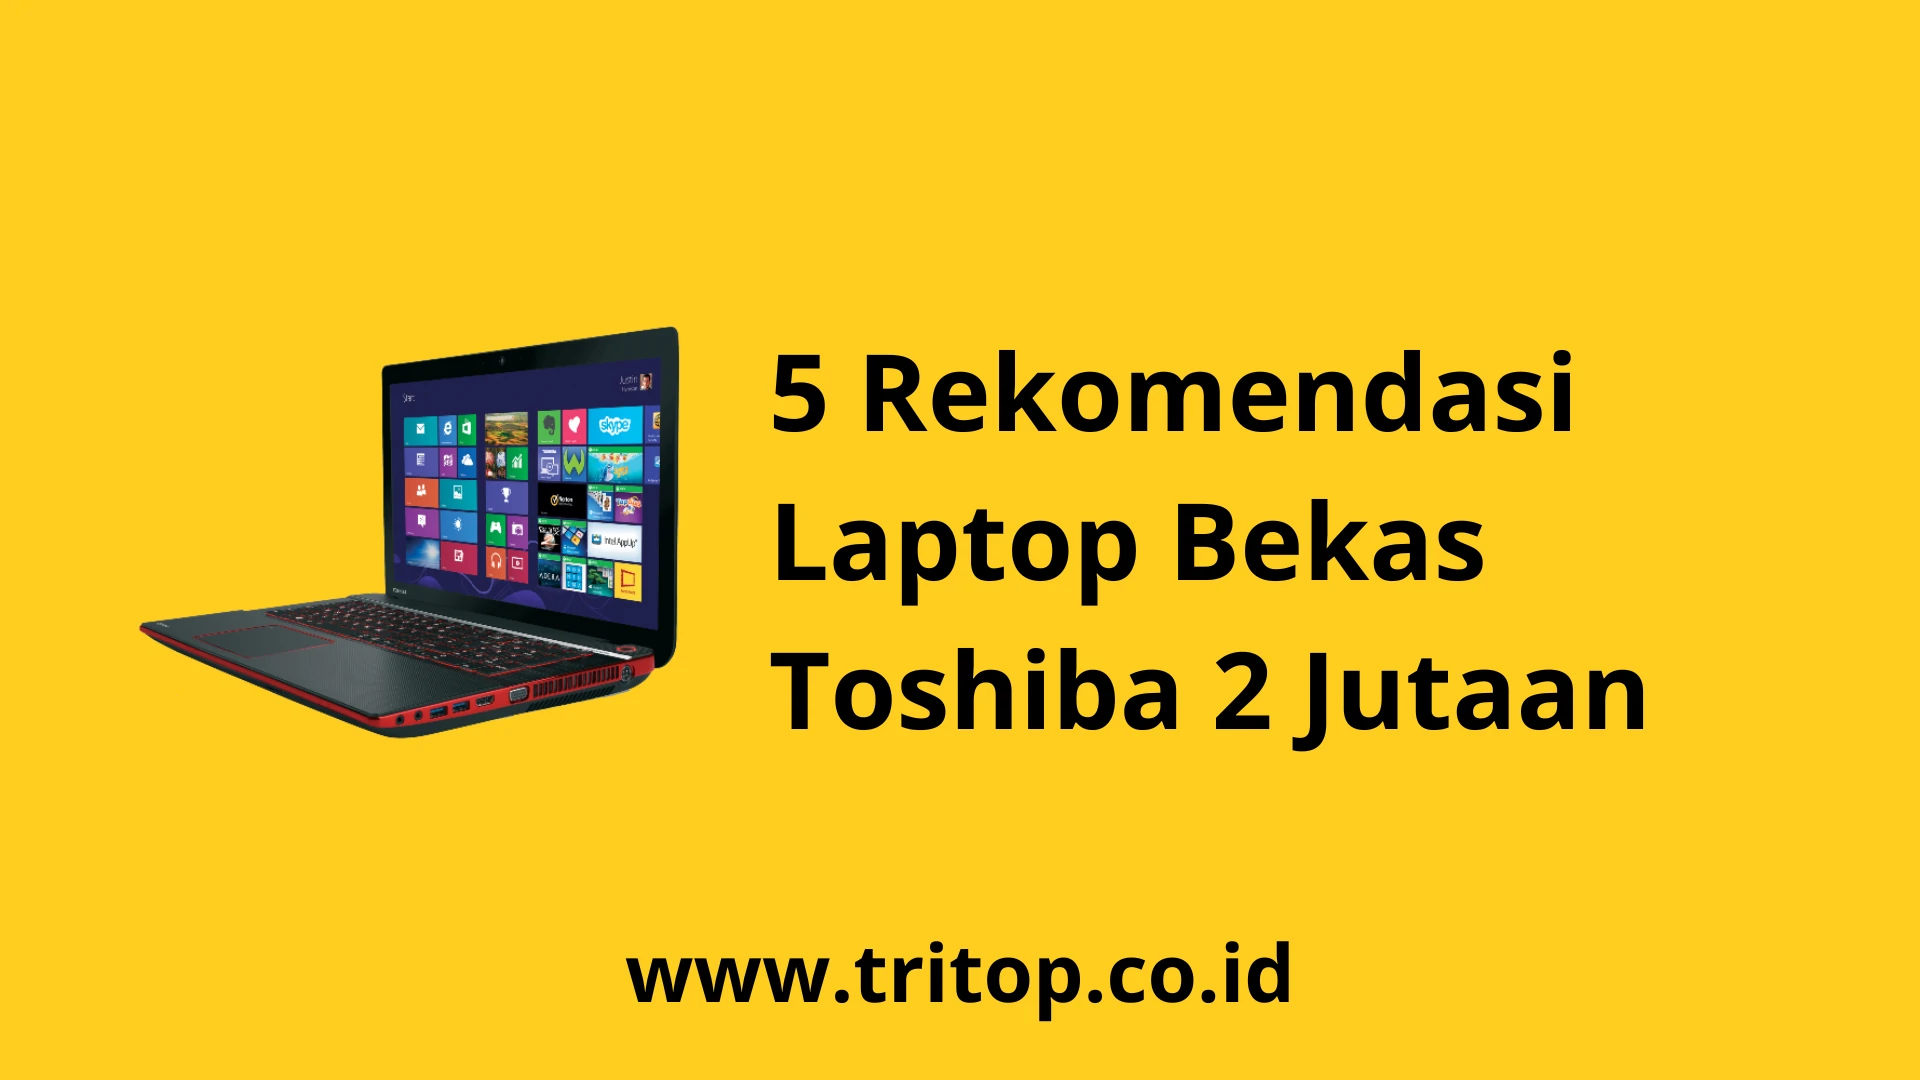 Laptop Bekas Toshiba 2 Jutaan www.tritop.co.id